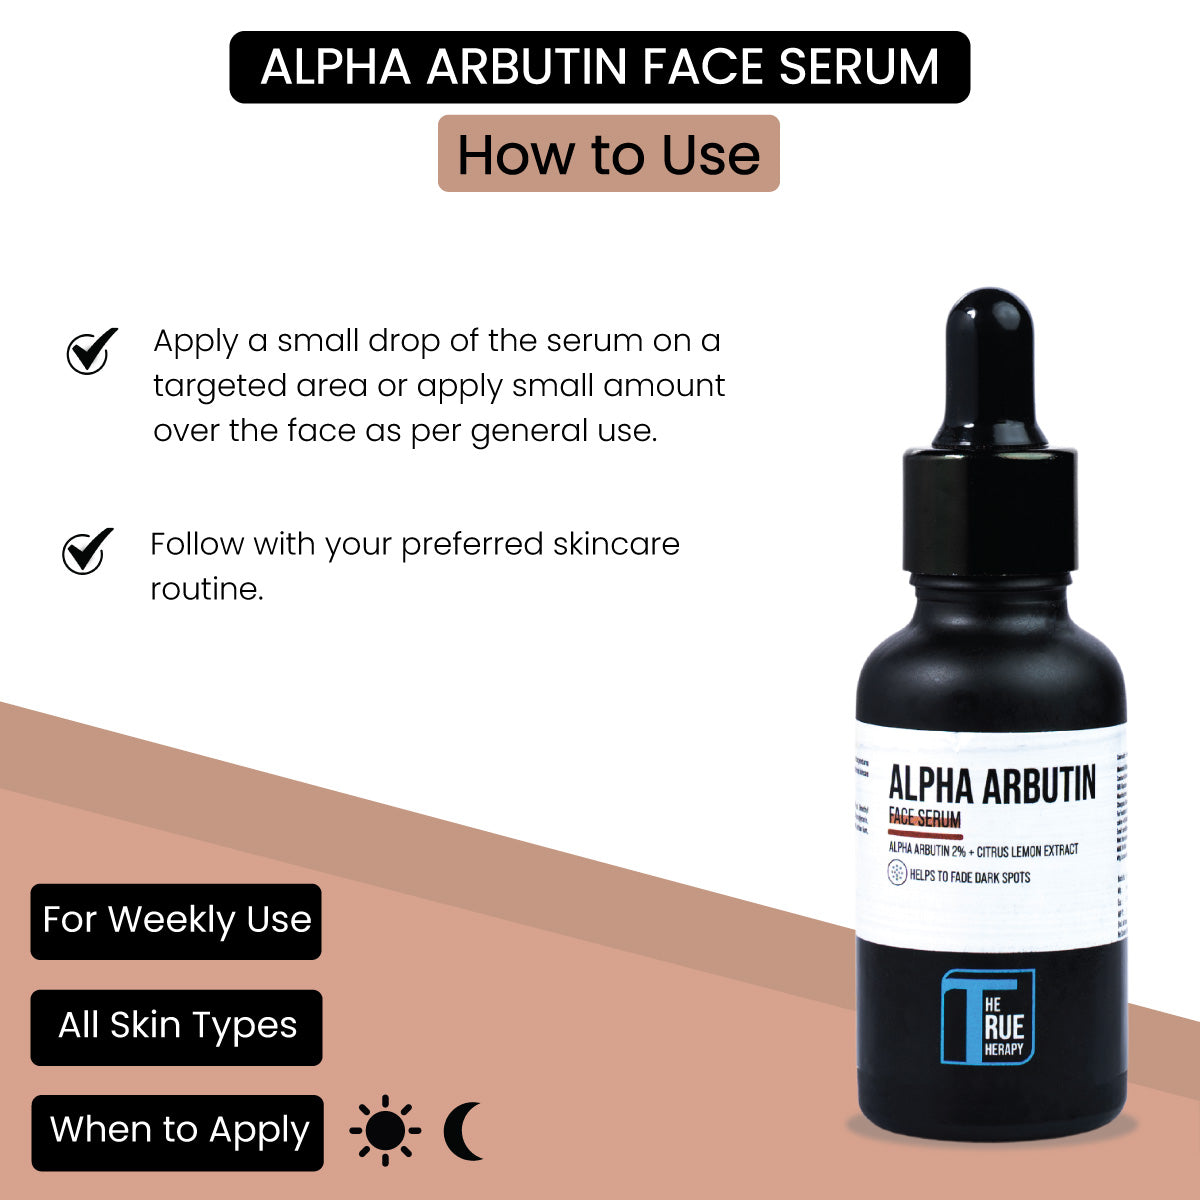 ALPHA ARBUTIN Face Serum - How To Use